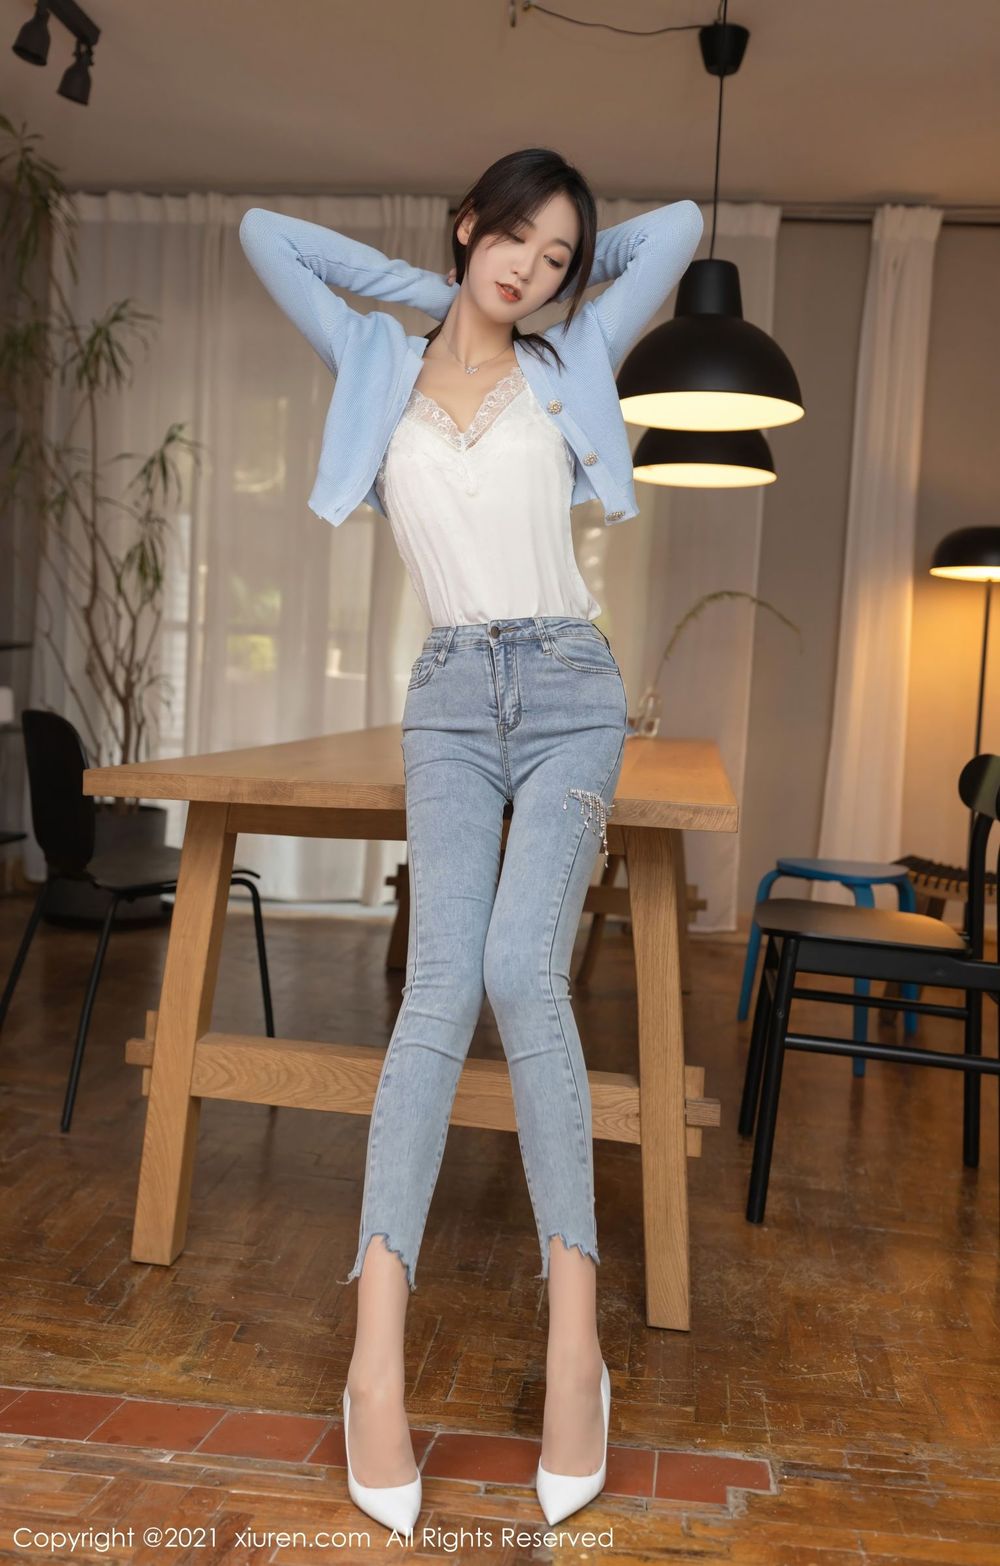 美女模特唐安琪牛仔裤新来的舍友内衣主题性感写真